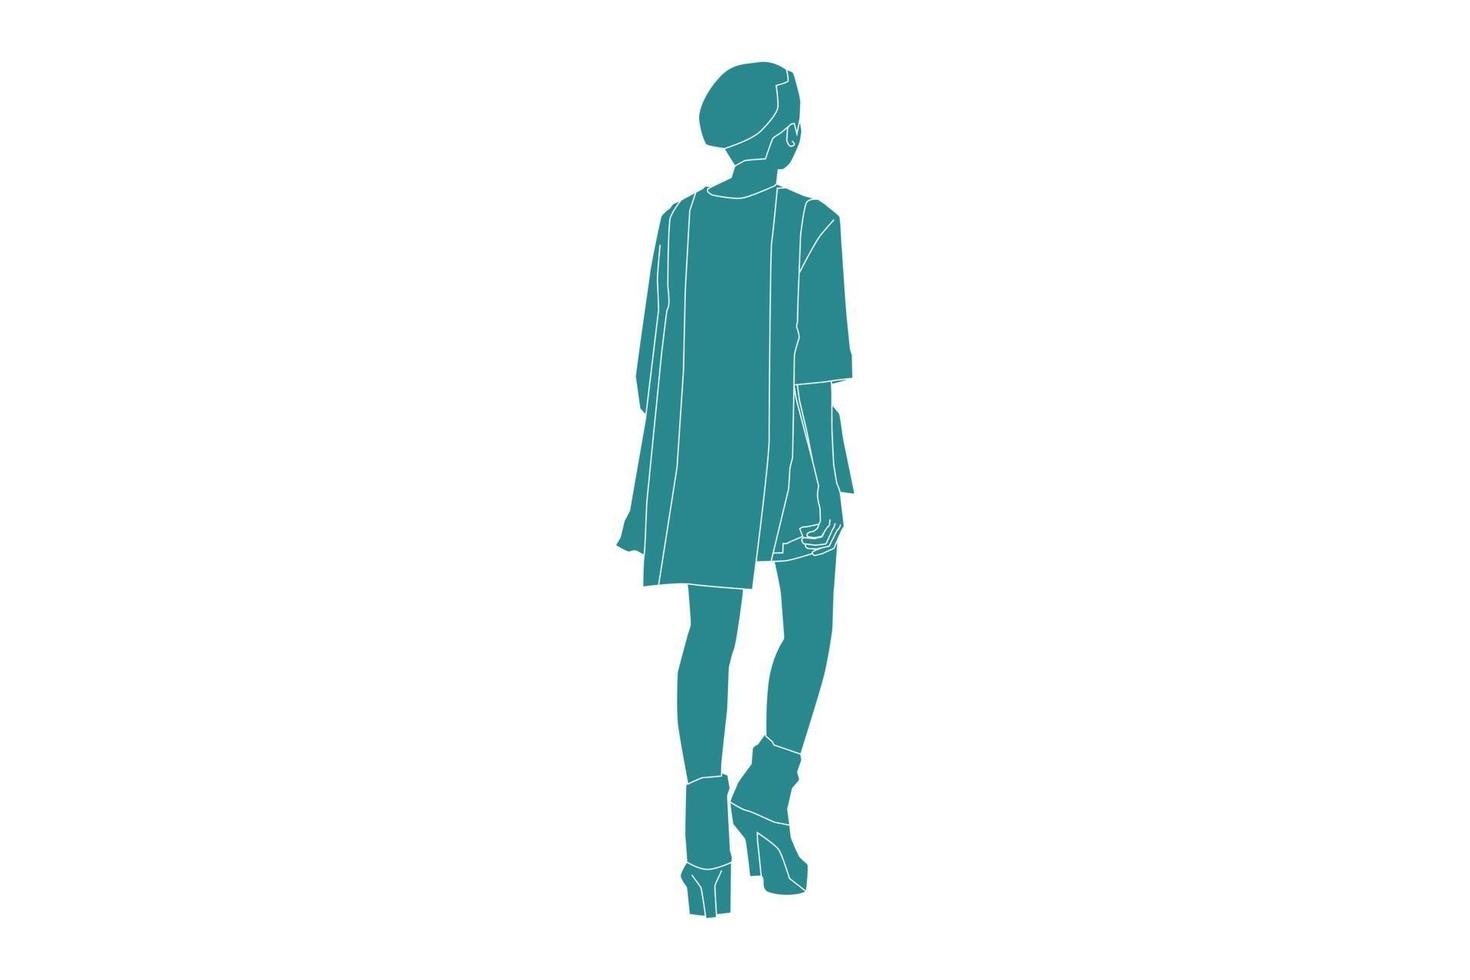 Vektor-Illustration der modischen Frau, die von hinten sieht, flacher Stil mit Umriss vektor